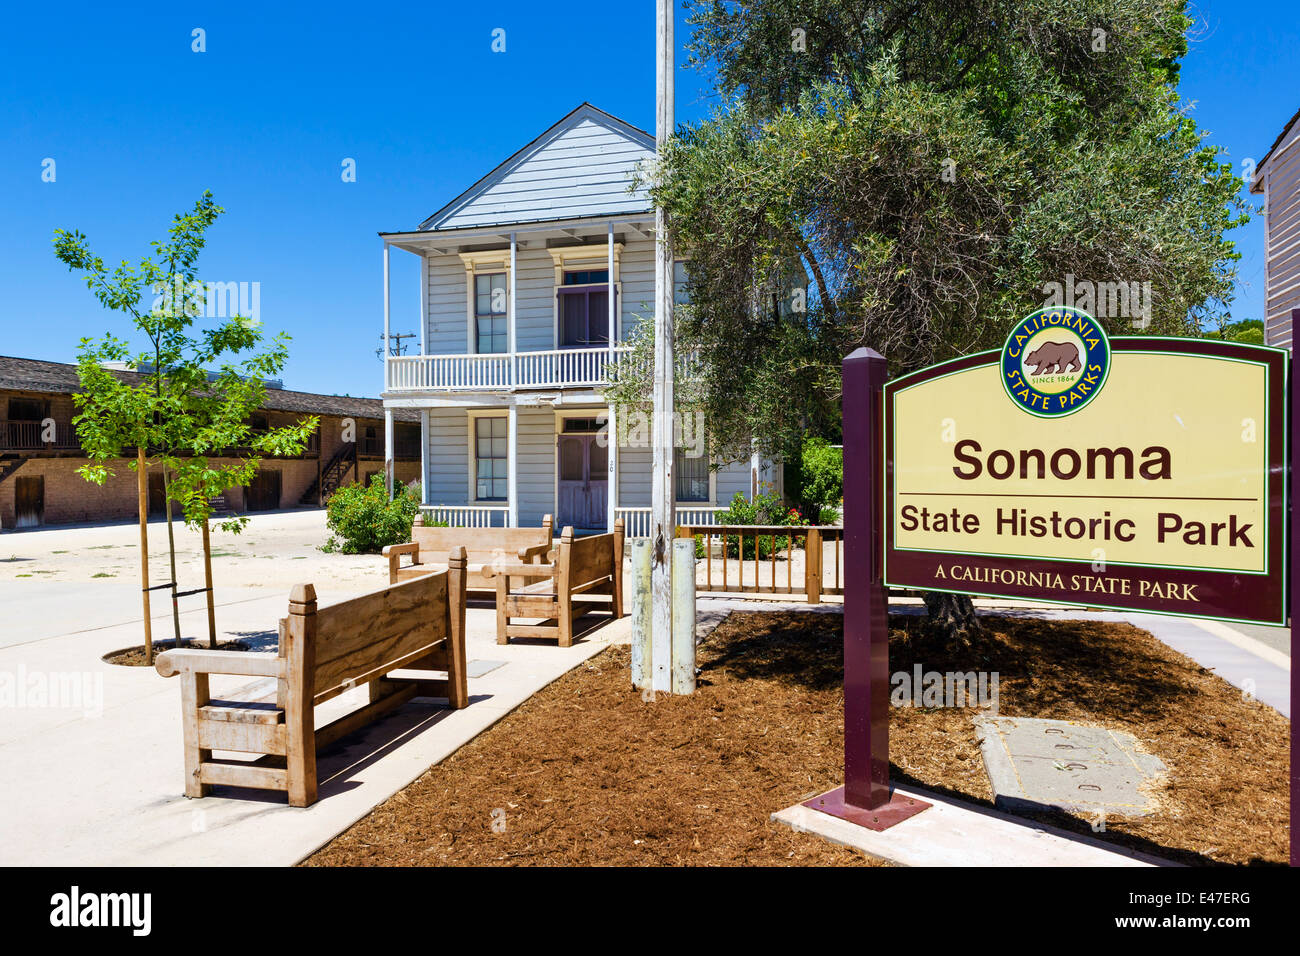 Sonoma State Historic Park dans le centre-ville de Sonoma, Sonoma Valley, Vin de Pays, California, USA Banque D'Images